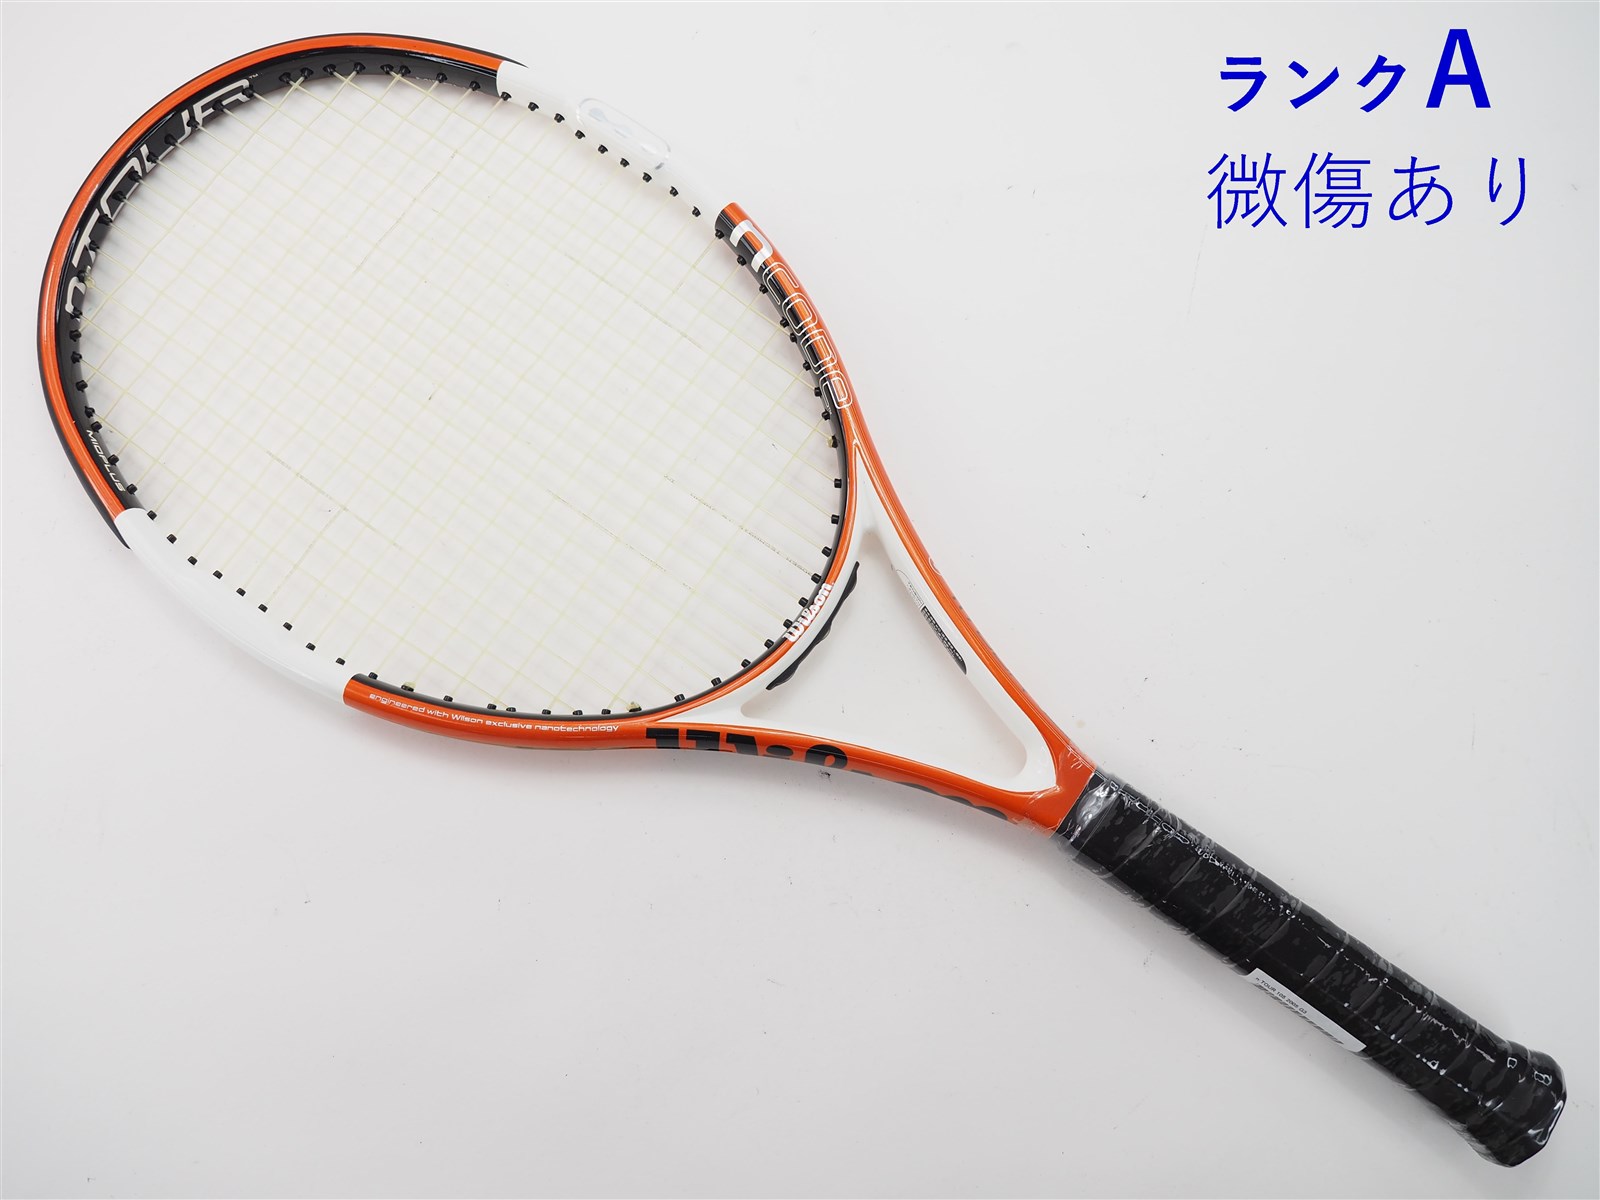 テニスラケット ウィルソン エヌ プロ 98 2005年モデル【一部グロメット割れ有り】 (G4)WILSON n PRO 98 2005ガット無しグリップサイズ